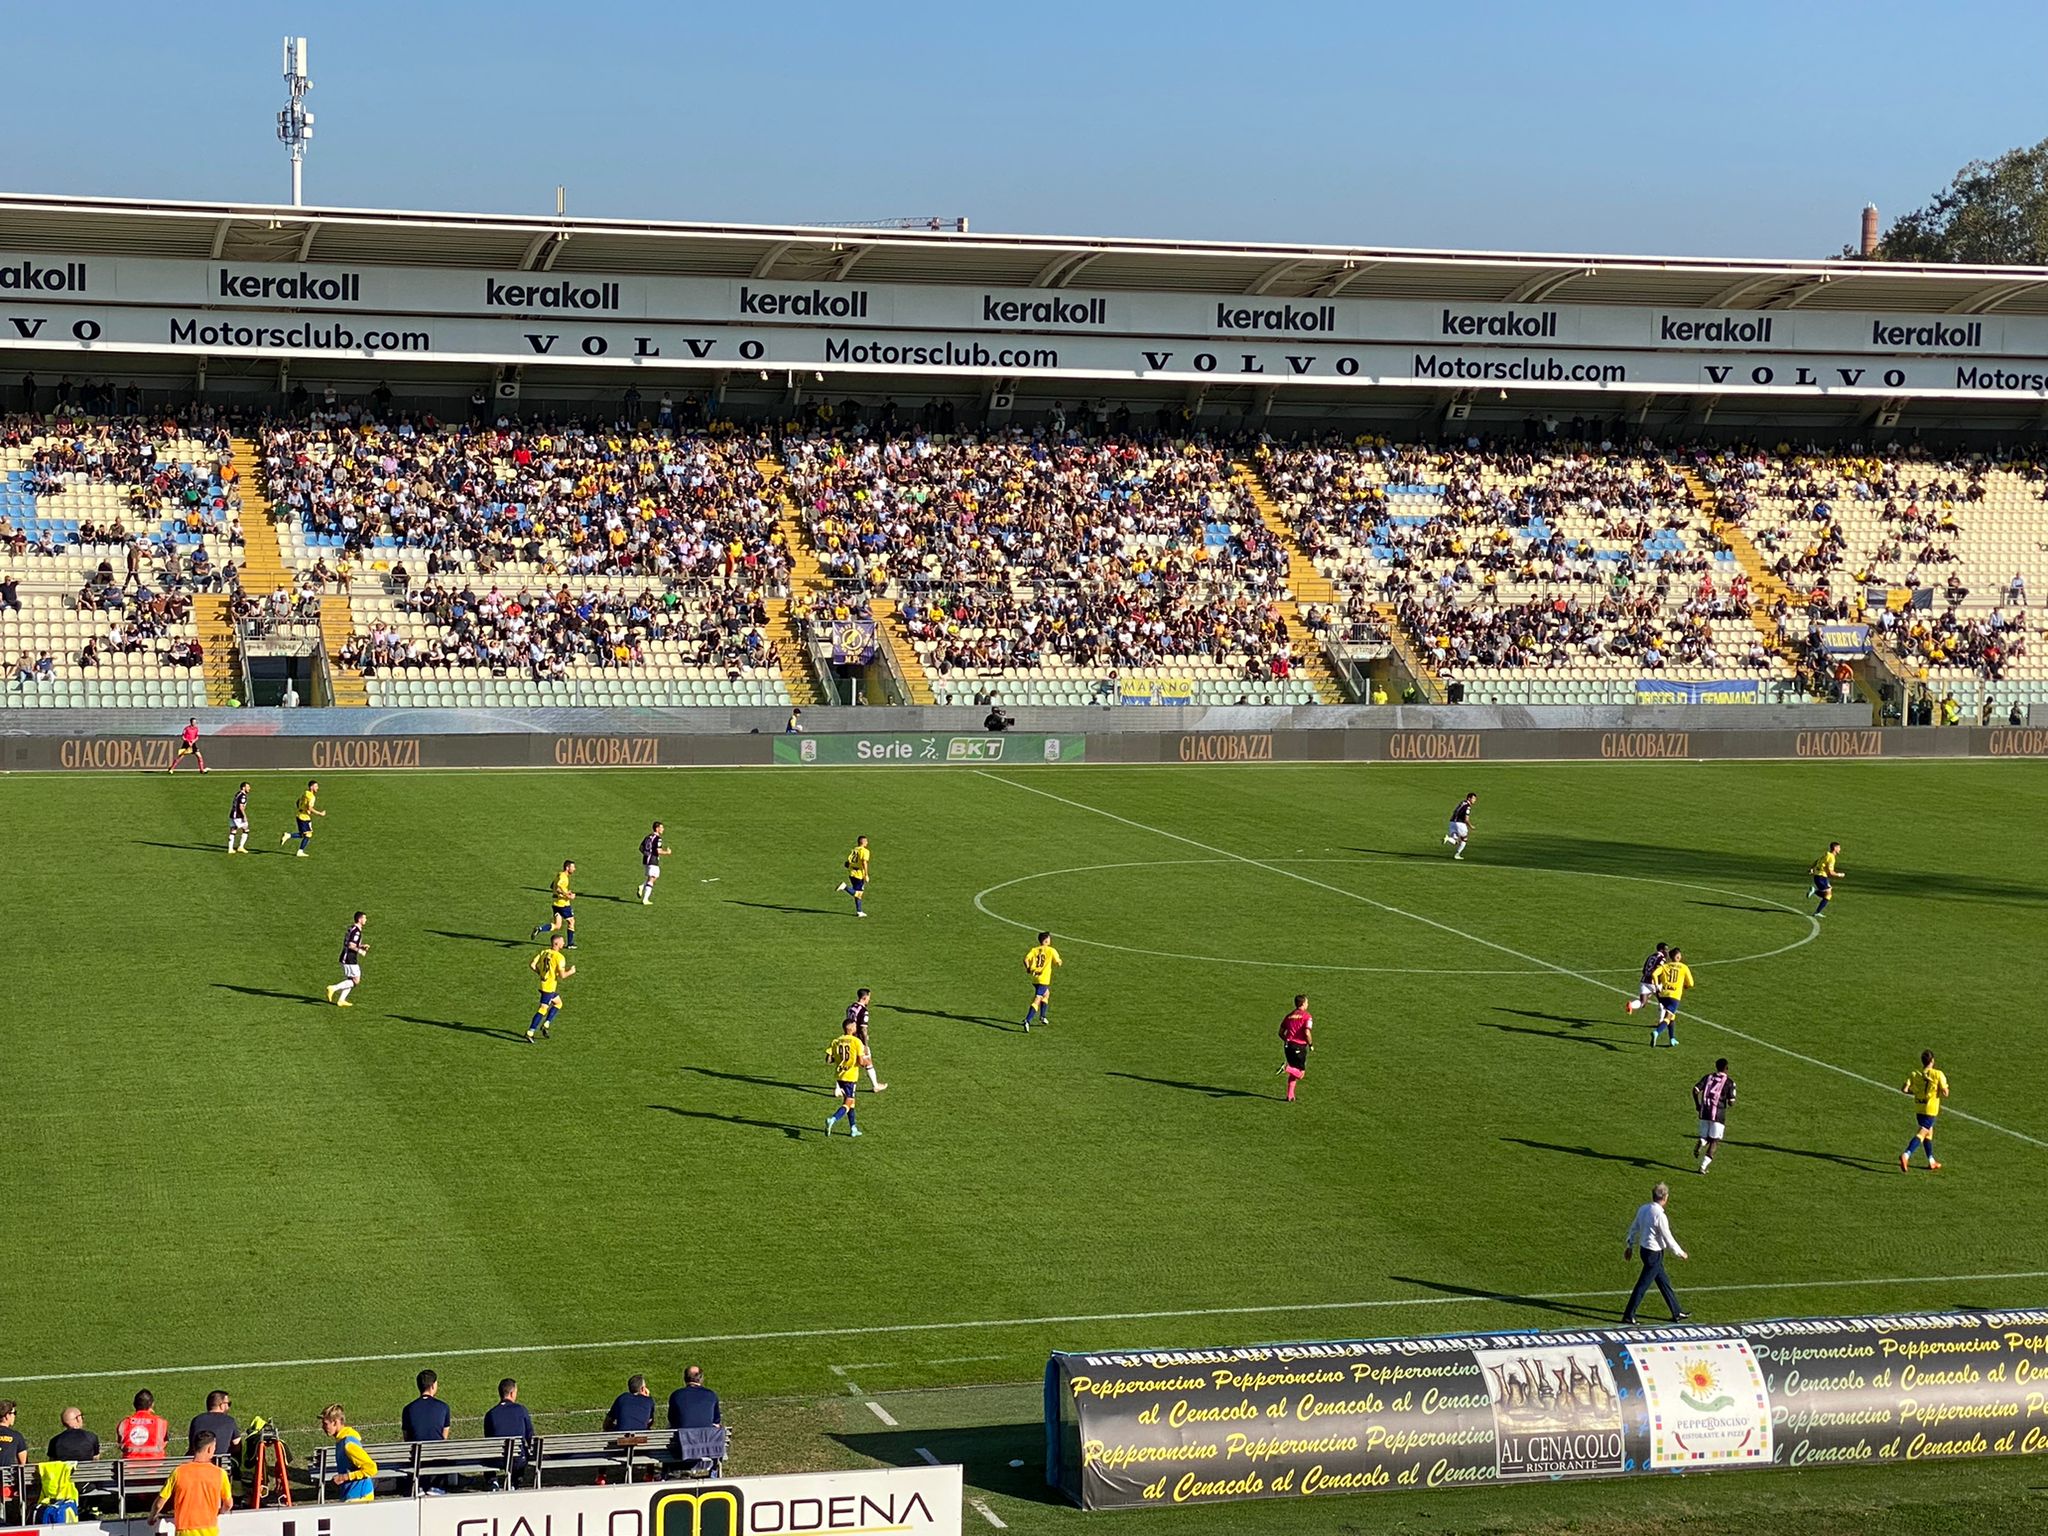  Ancora gli errori penalizzano il Modena: 0-2 contro il Palermo e  la zona calda si riavvicina